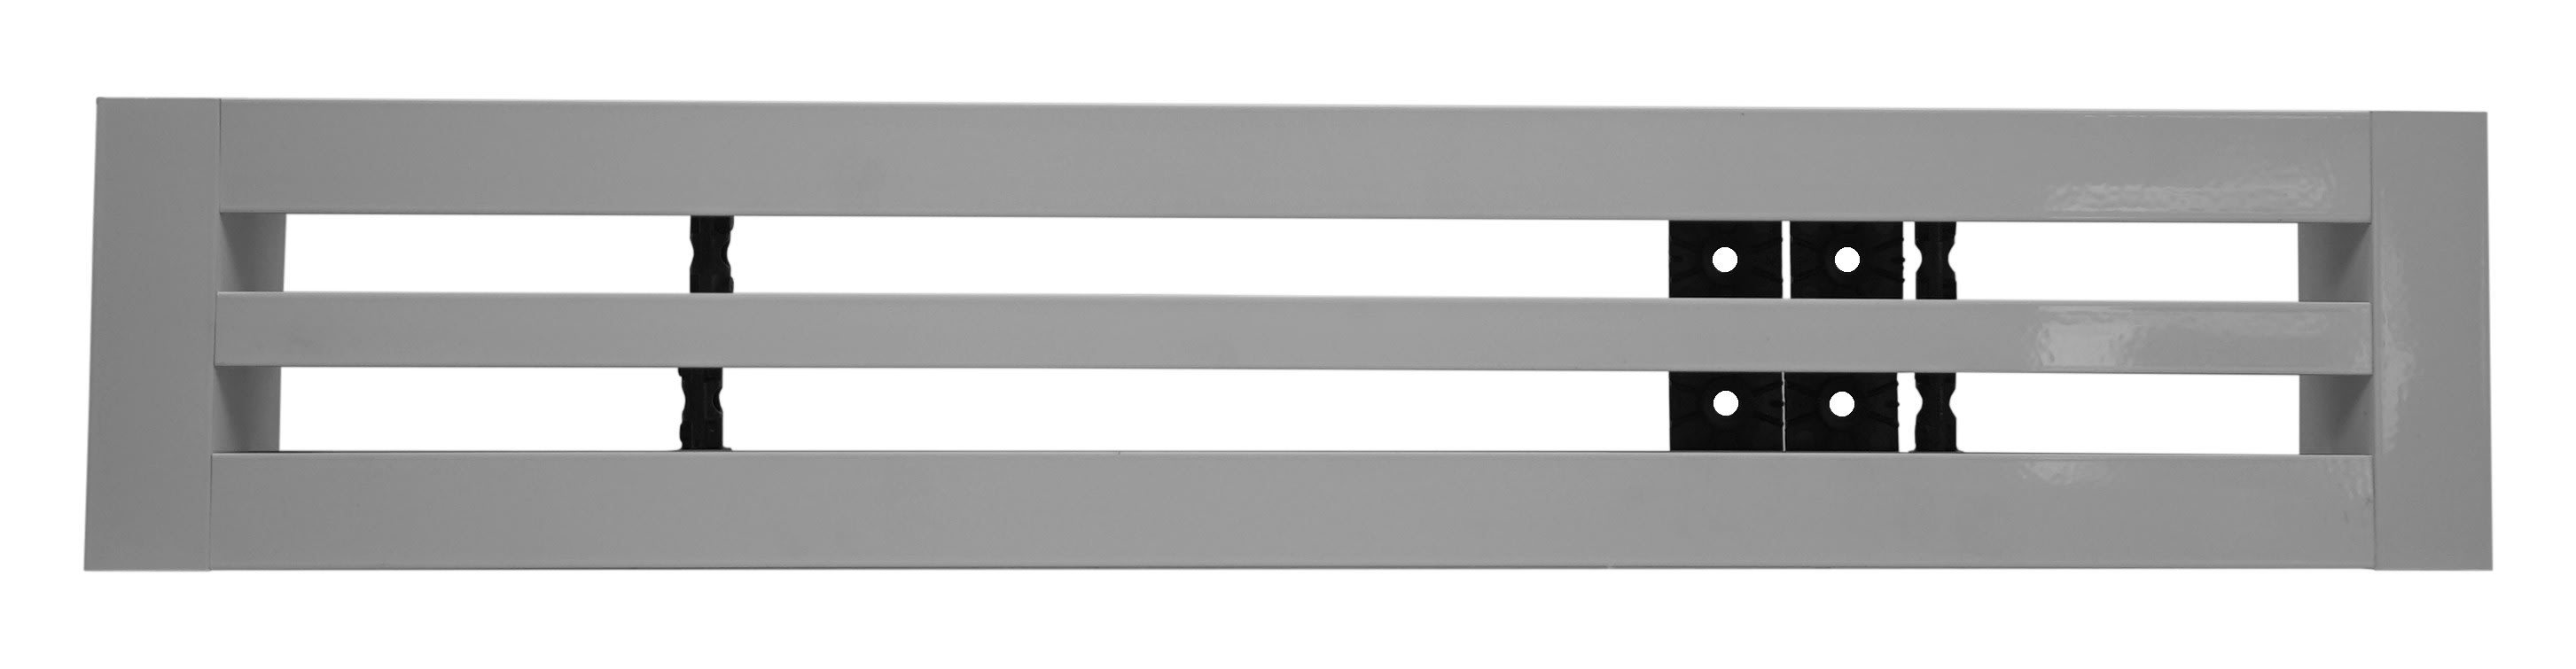 S&P - Diffuseur linéaire à 2 fentes réglables, plenum isolé, alu, longueur 1135 mm